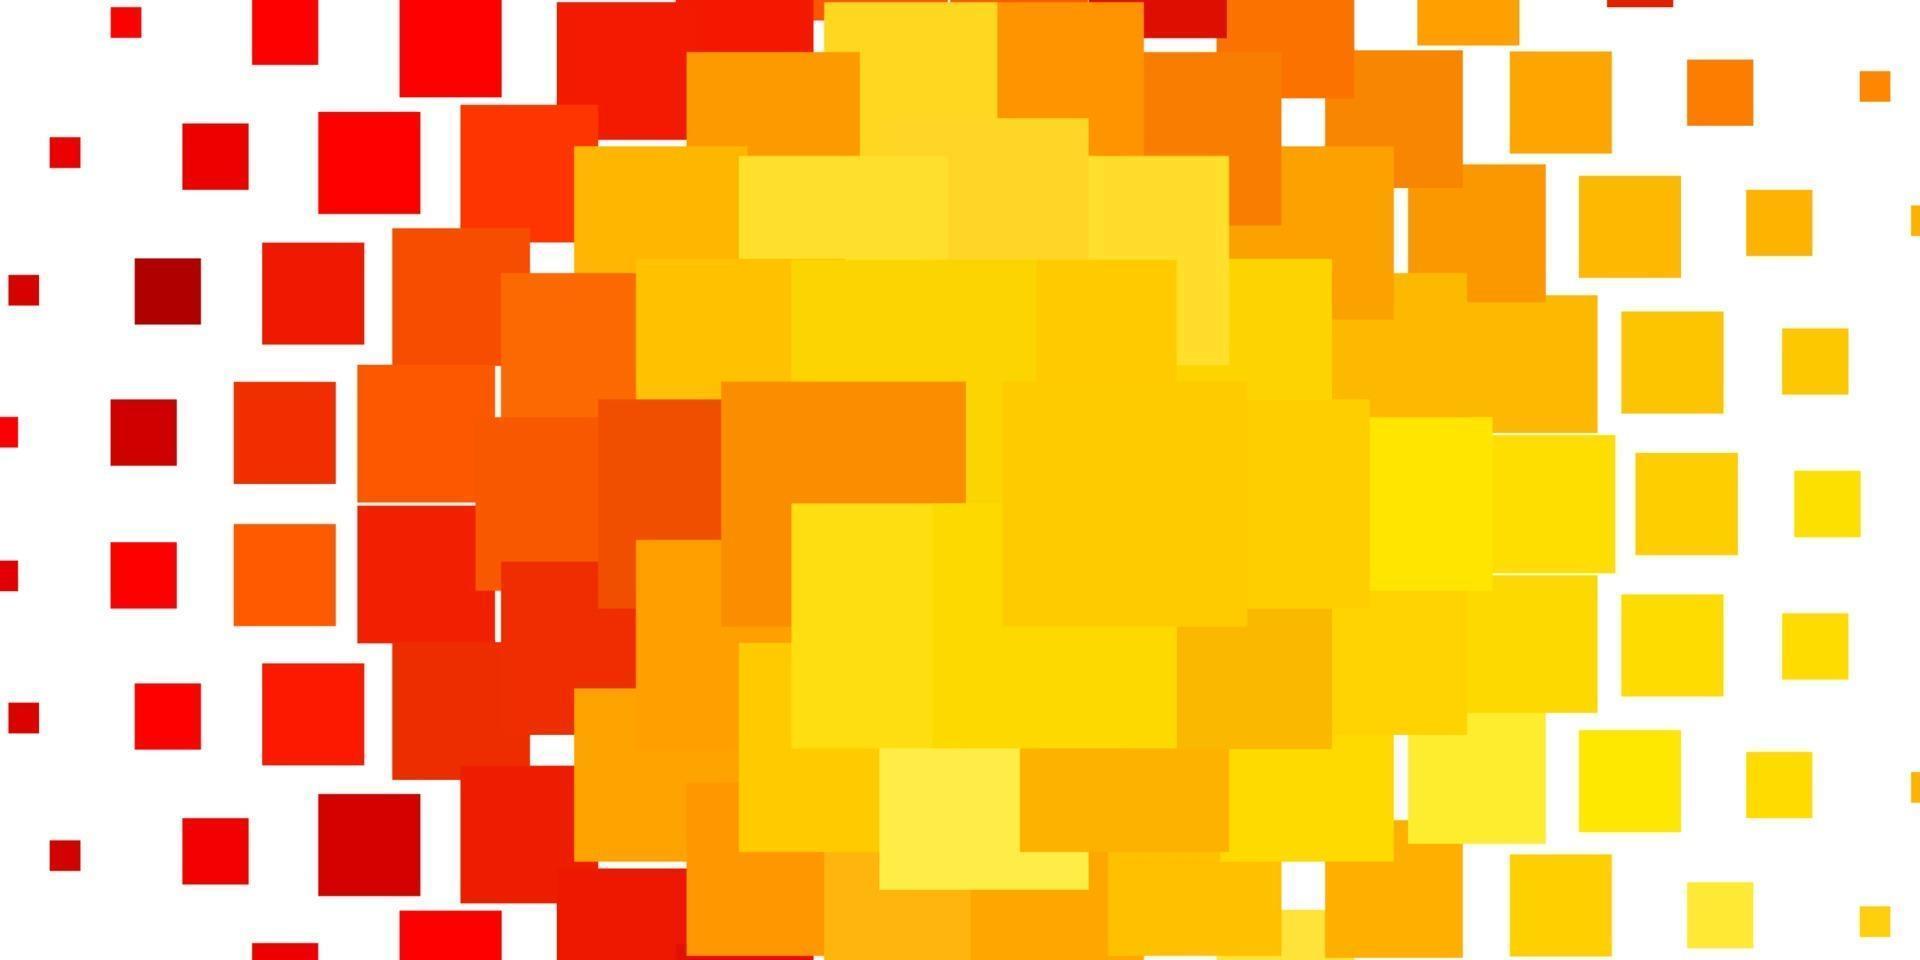 trama vettoriale arancione chiaro in stile rettangolare.